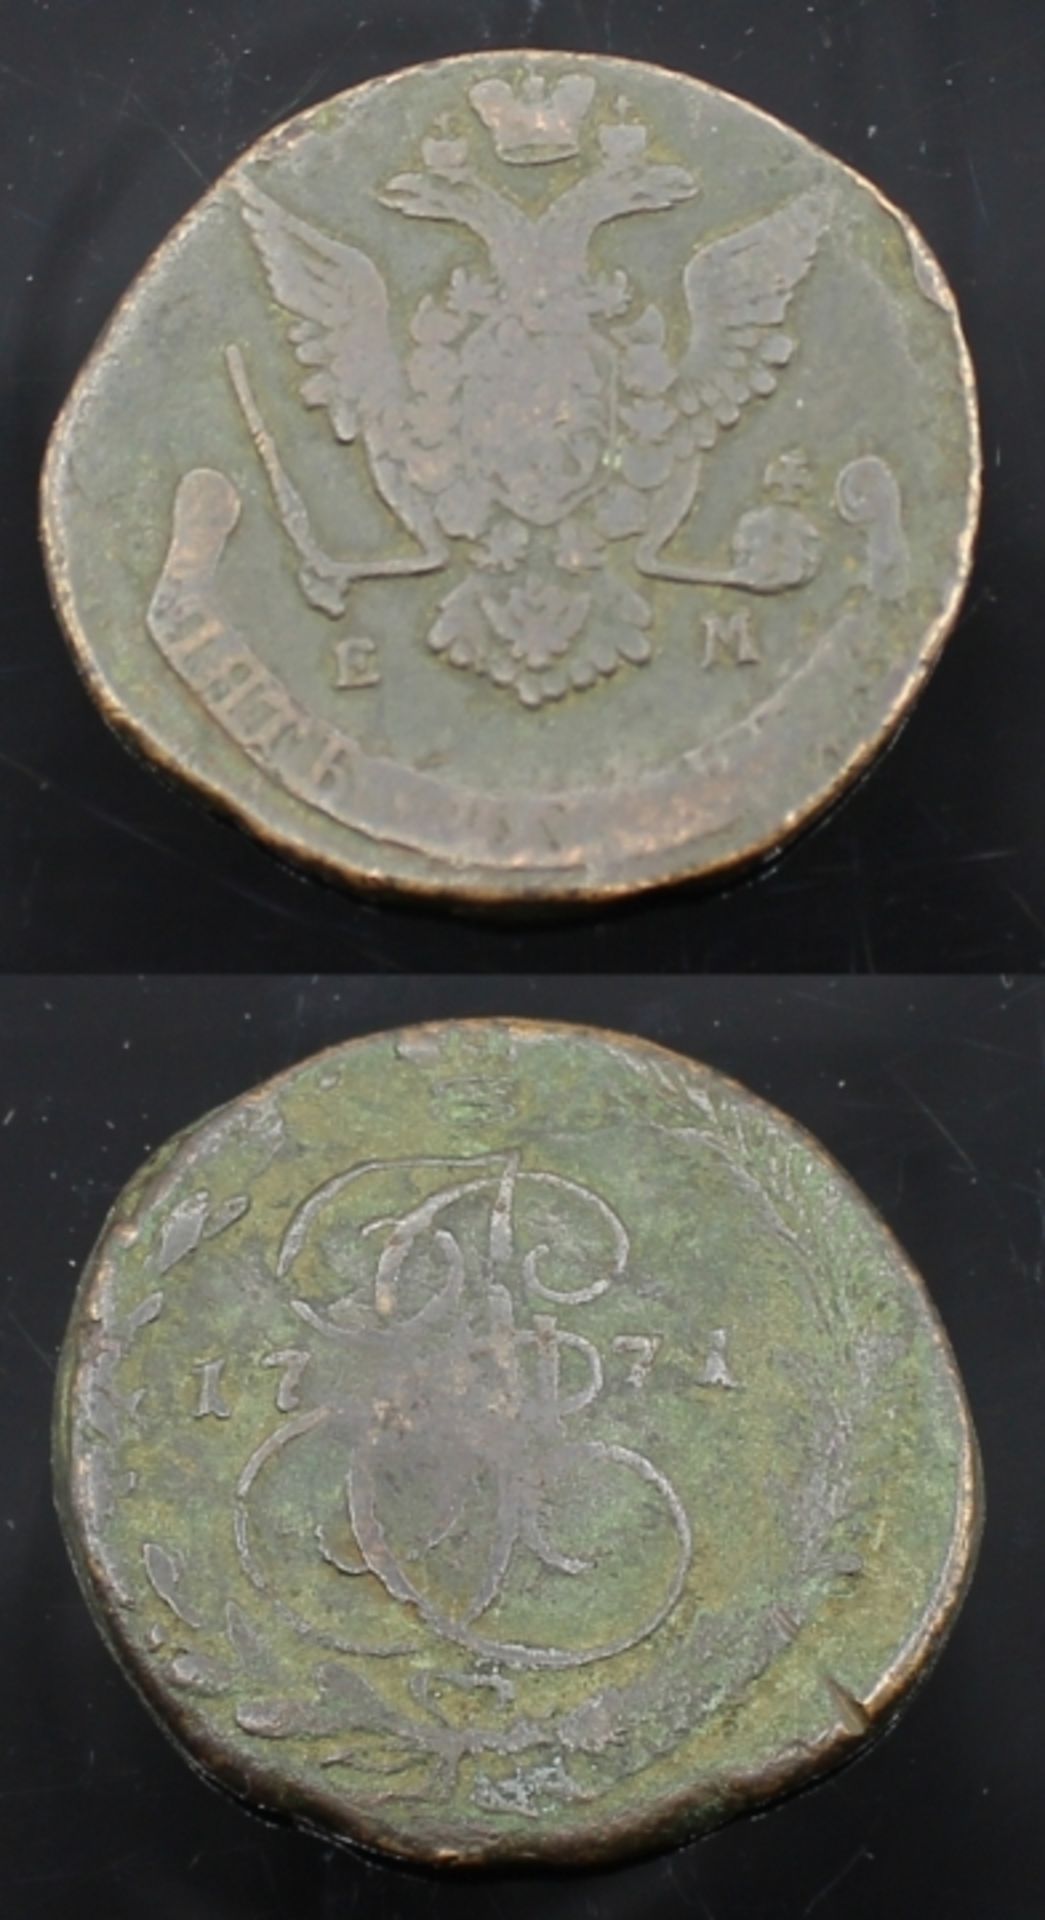 Kupfermünze 5 Kopeken Russland von 1771, Mon. von Zarin Katharina II (1729-1796), d.= 41-44 mm,